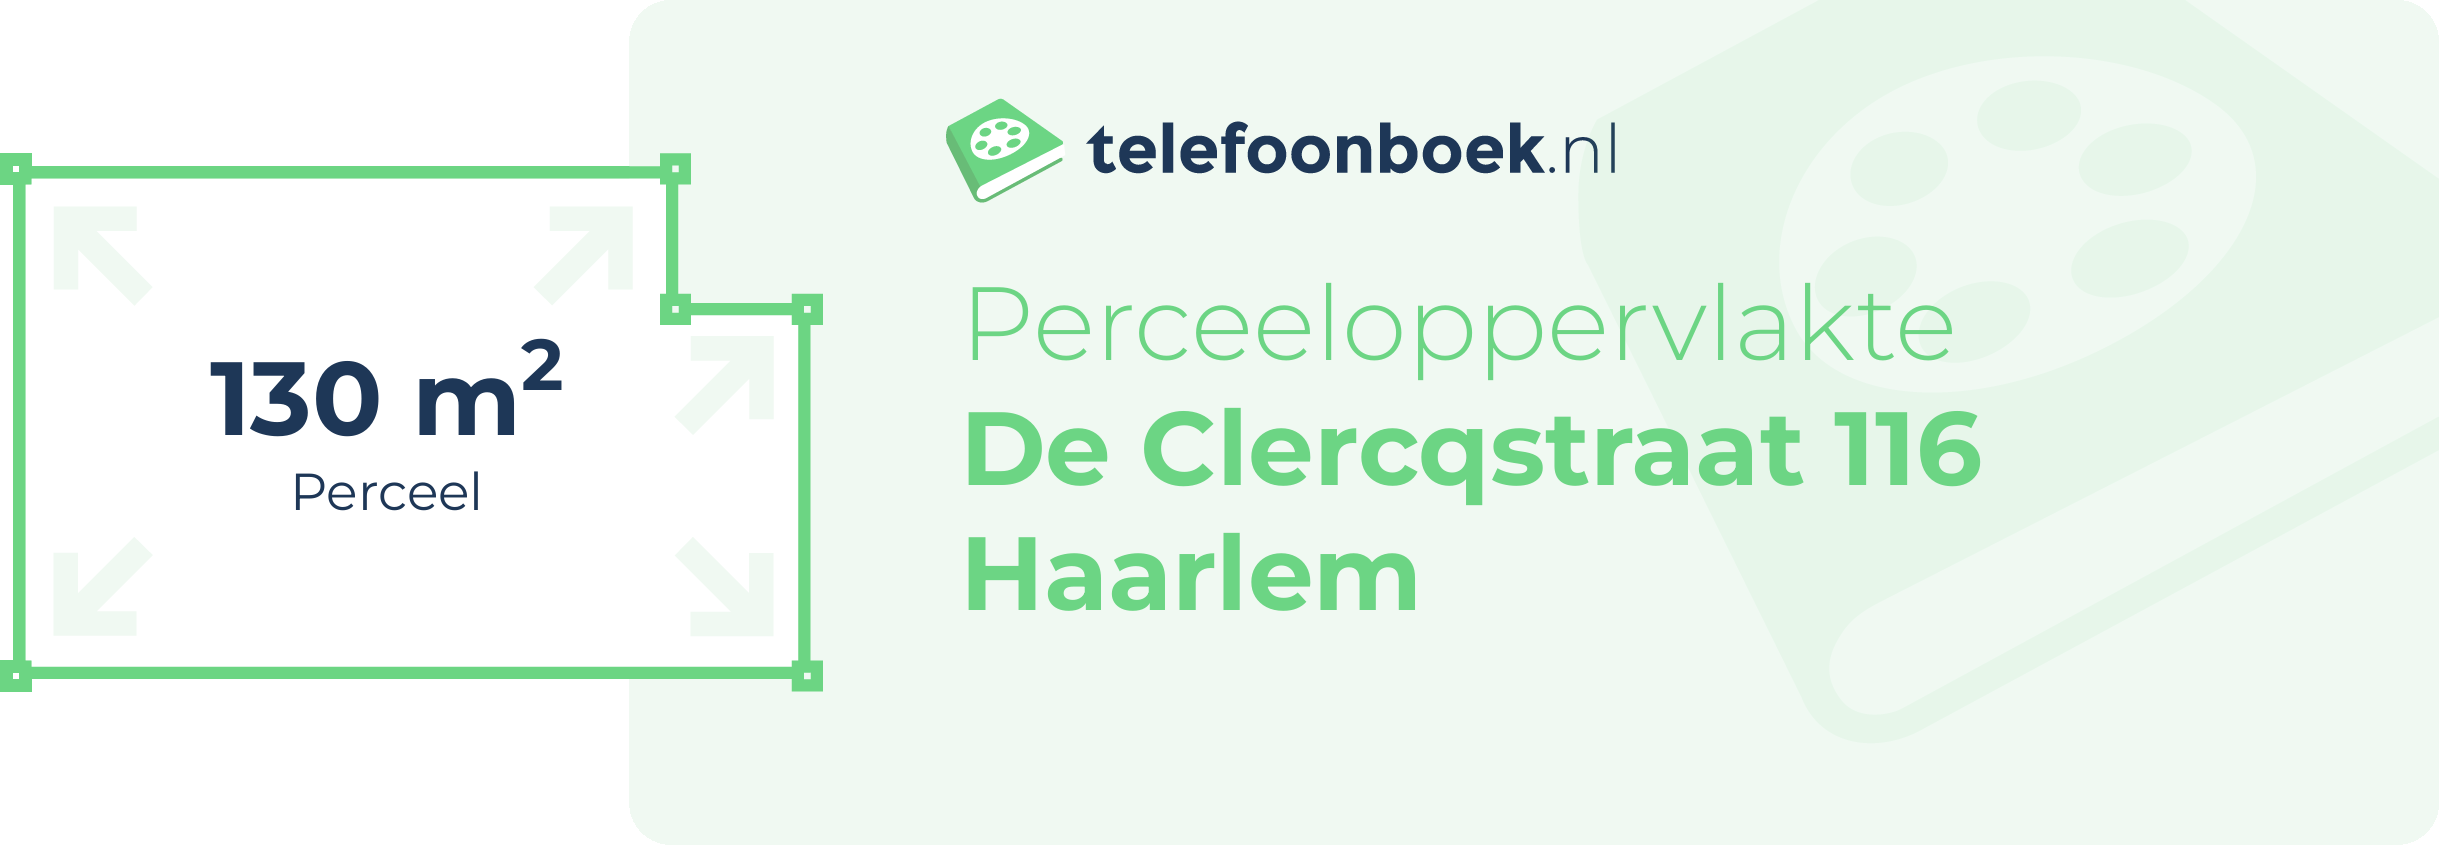 Perceeloppervlakte De Clercqstraat 116 Haarlem